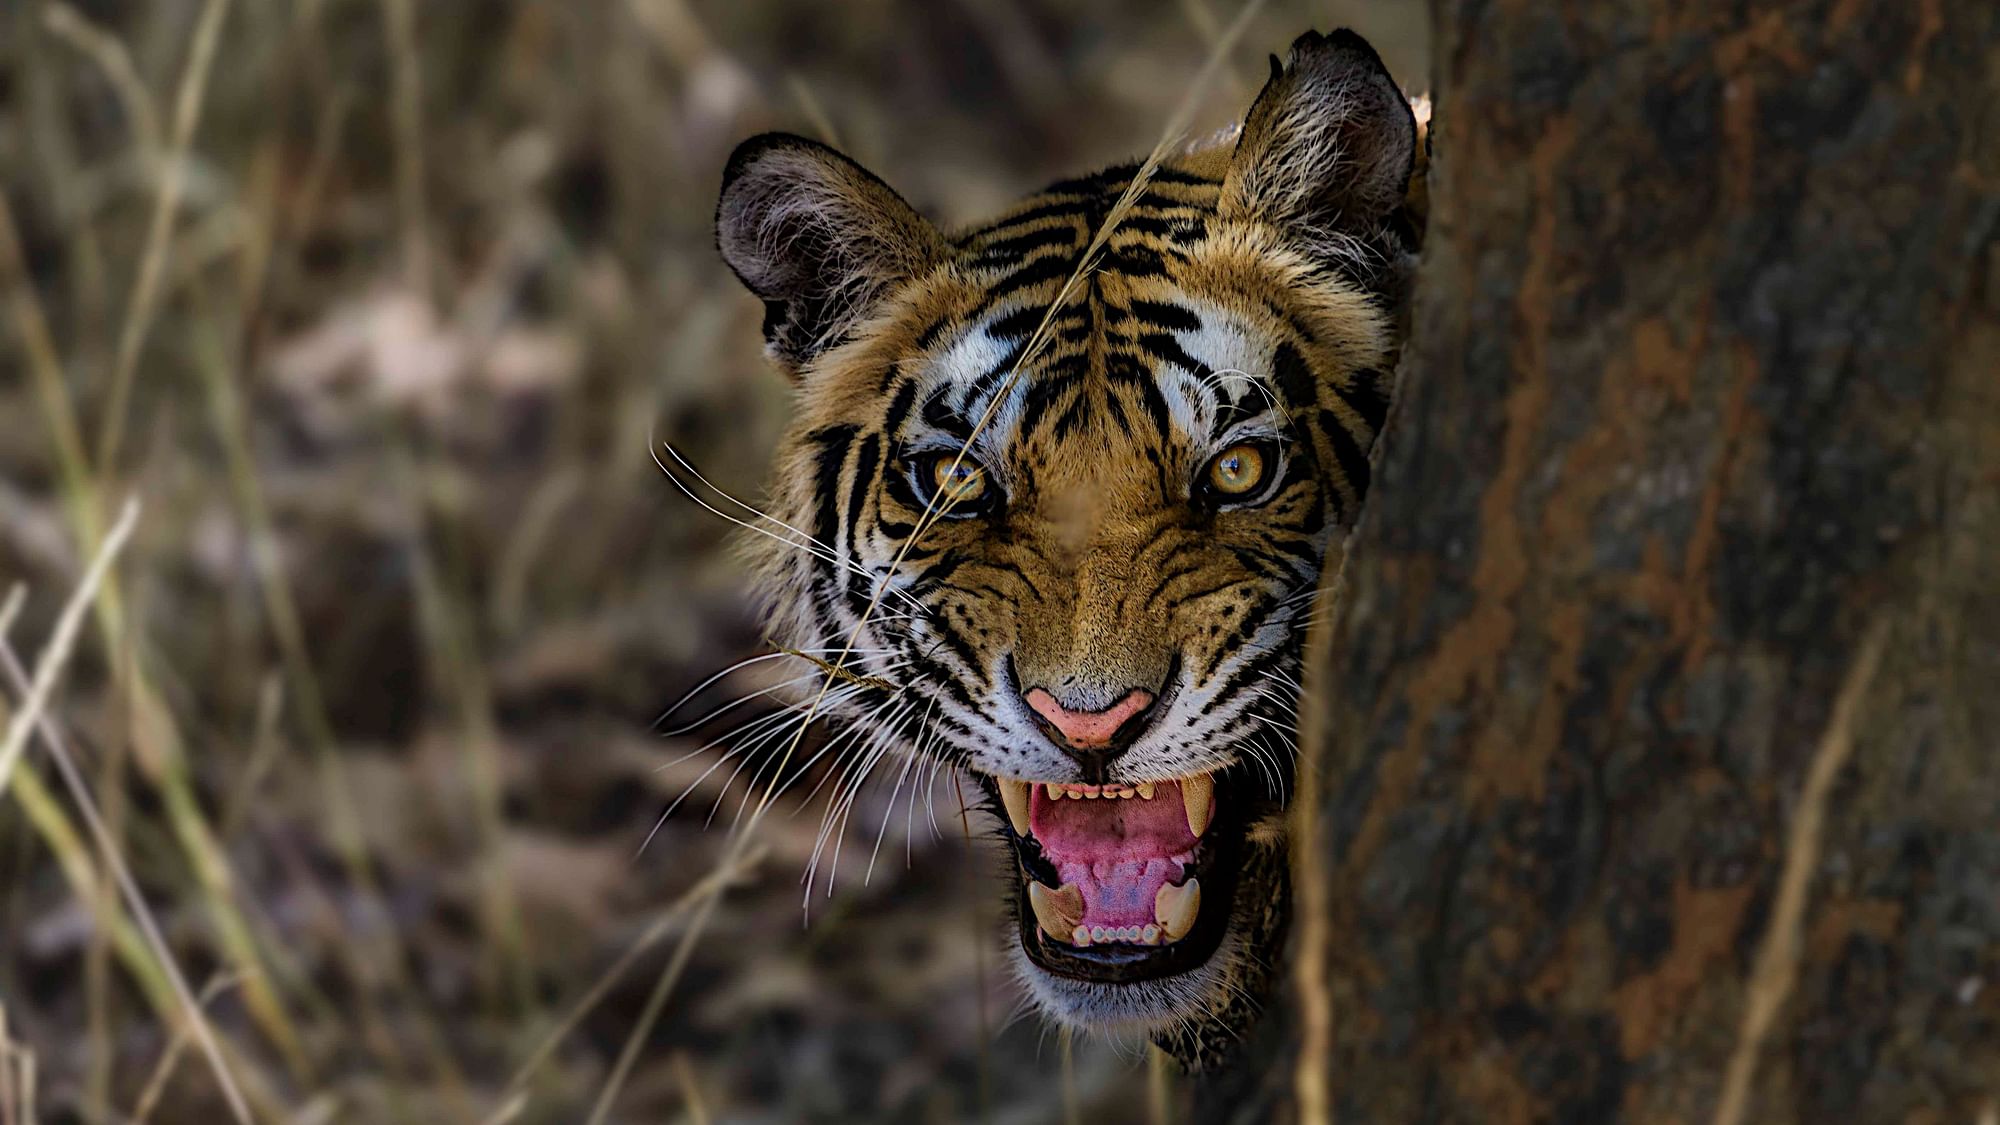 Tiger Day: बाघों की संख्या में 33% का इजाफा, कुल संख्या-2,967